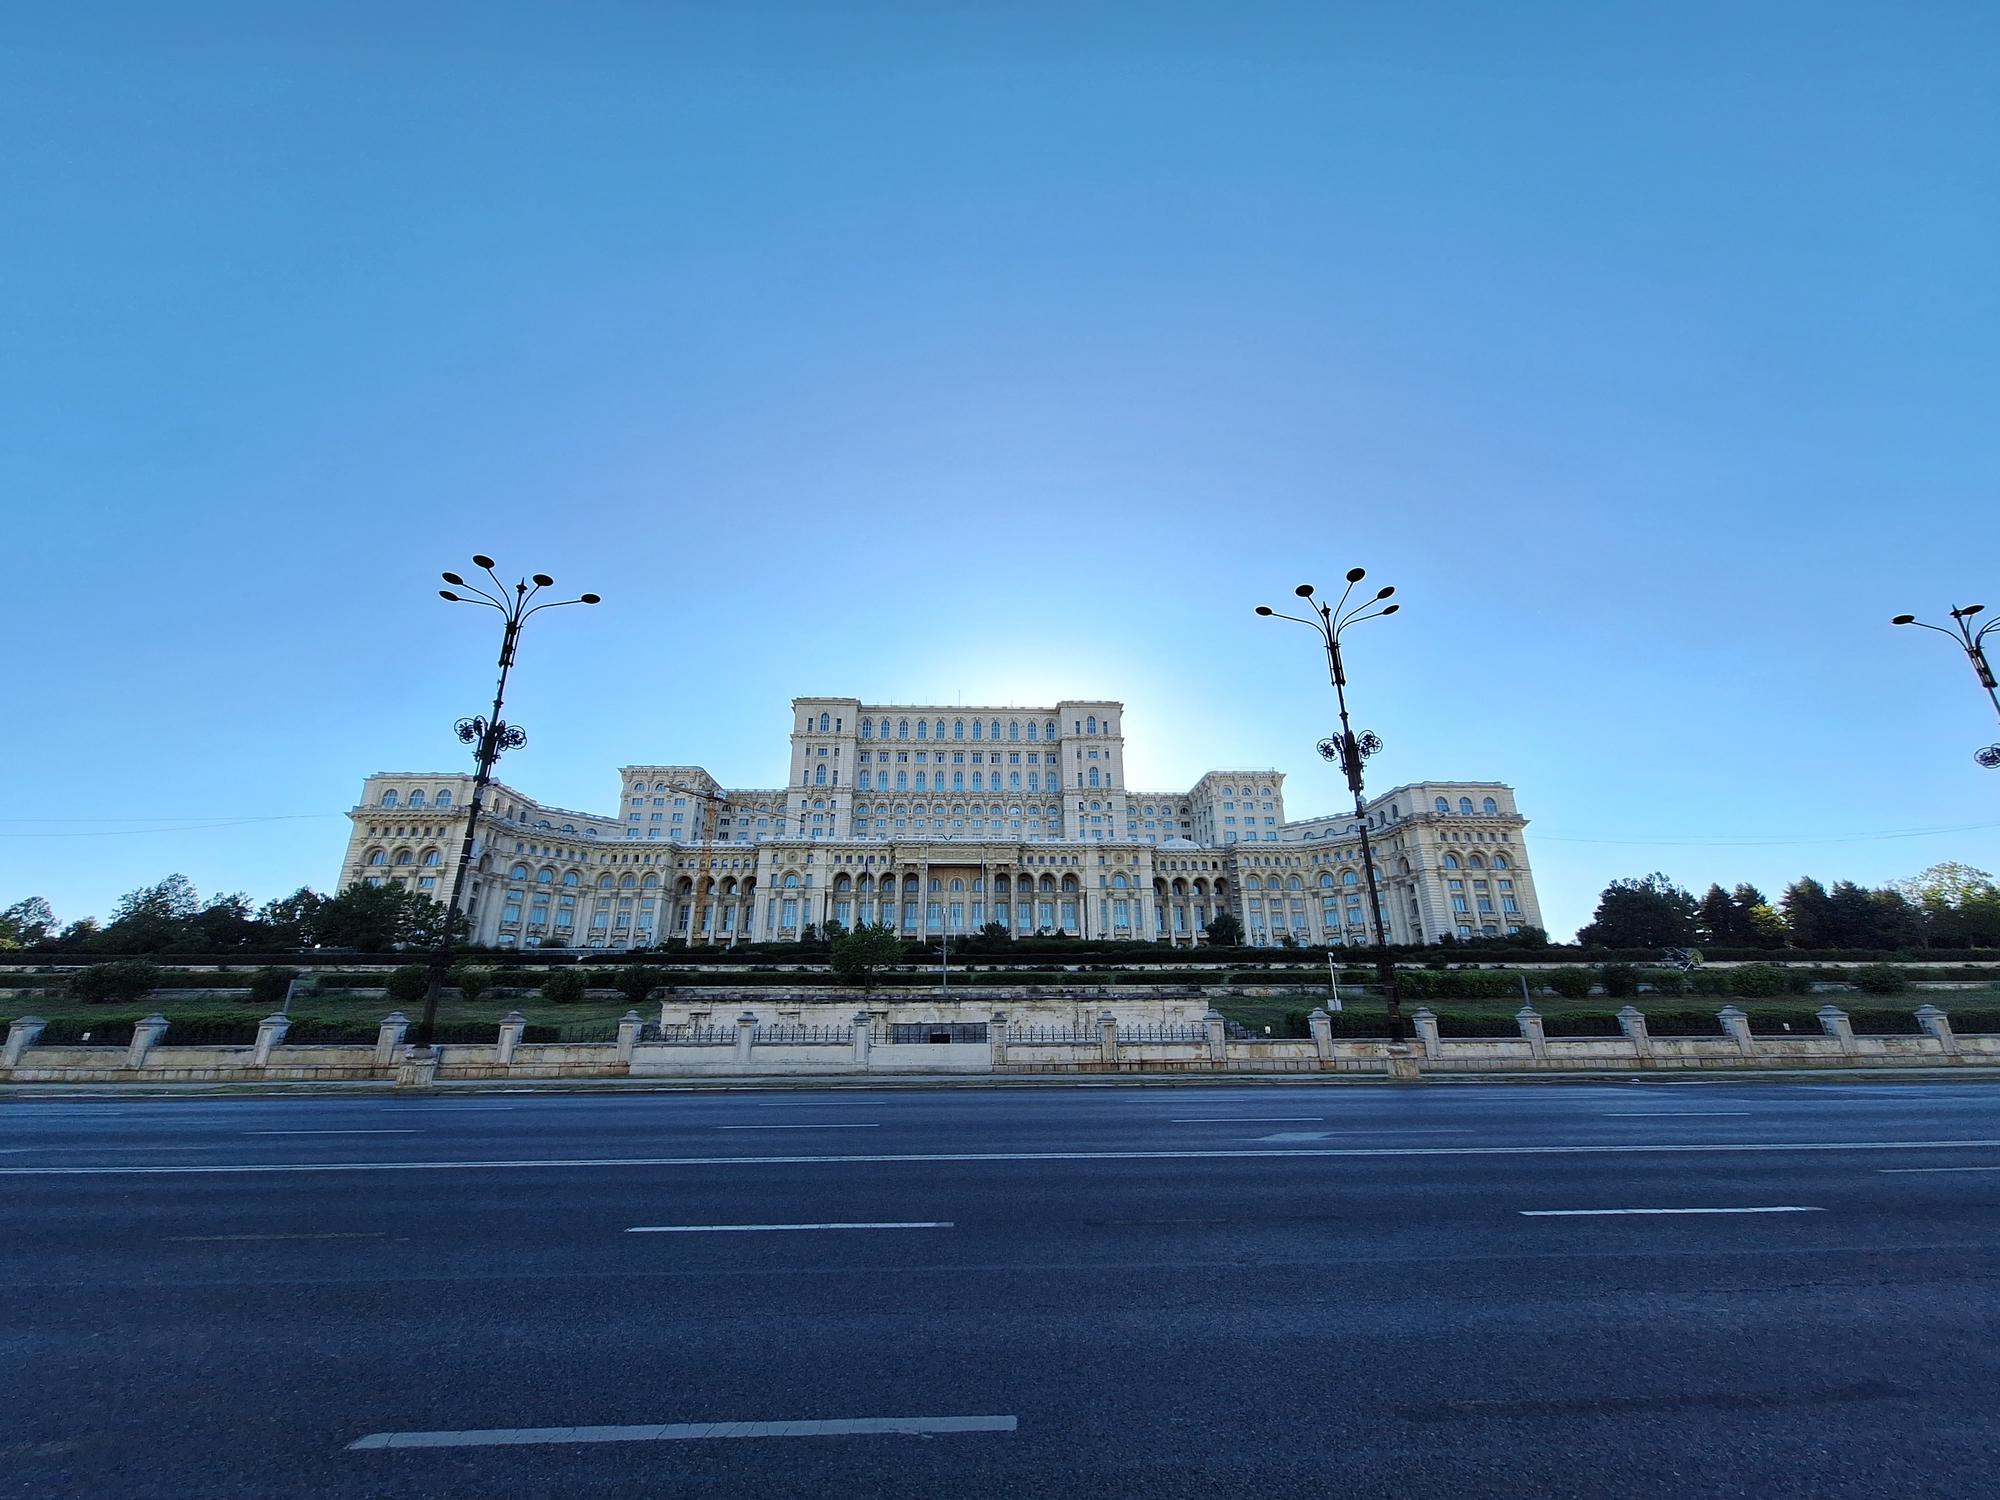 Blick auf den pompösen Palast des Volkes in București